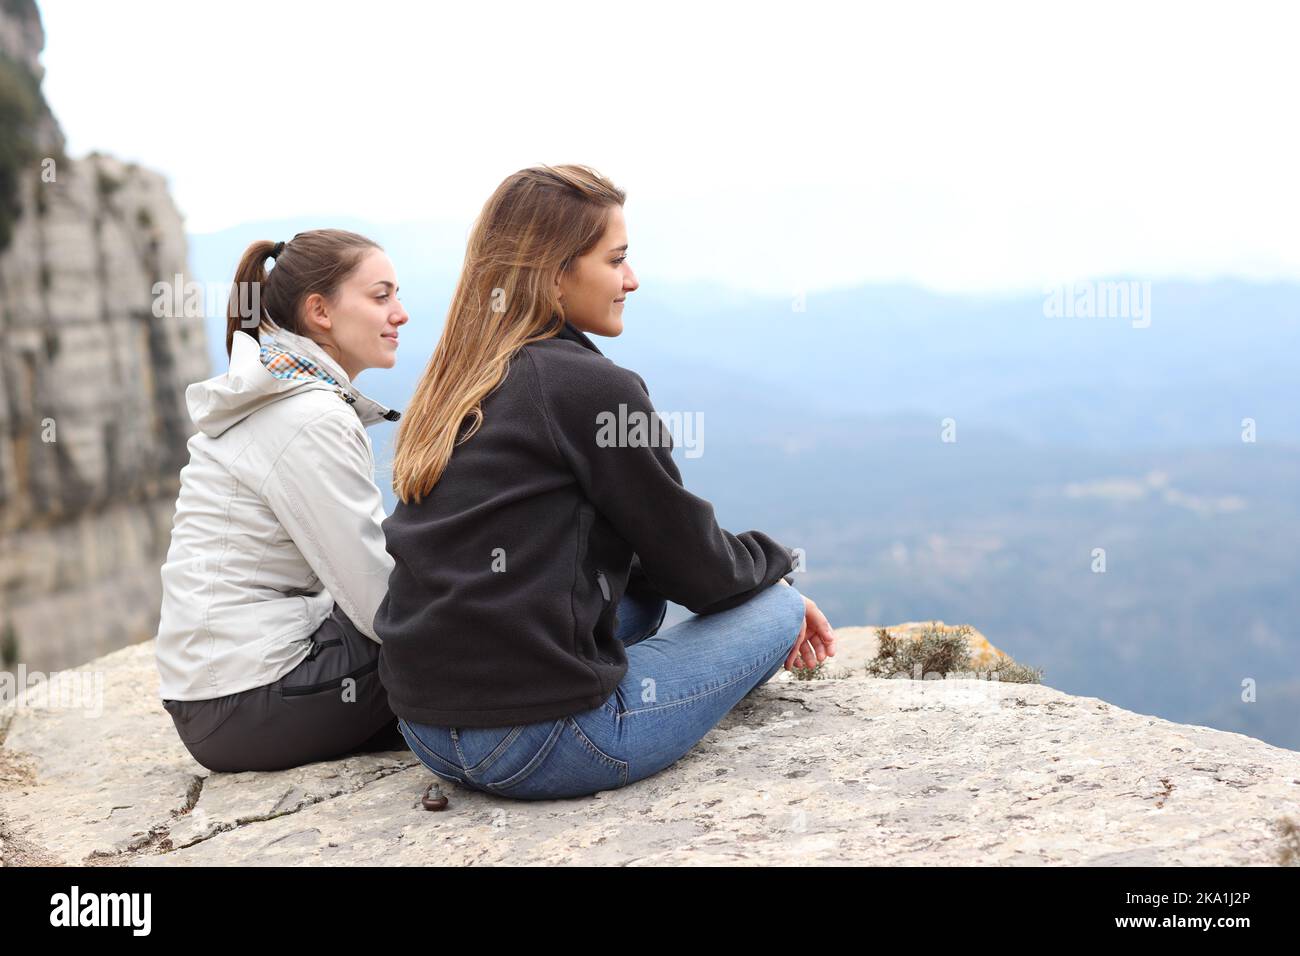 Deux randonneurs contemplant une vue depuis la falaise Banque D'Images